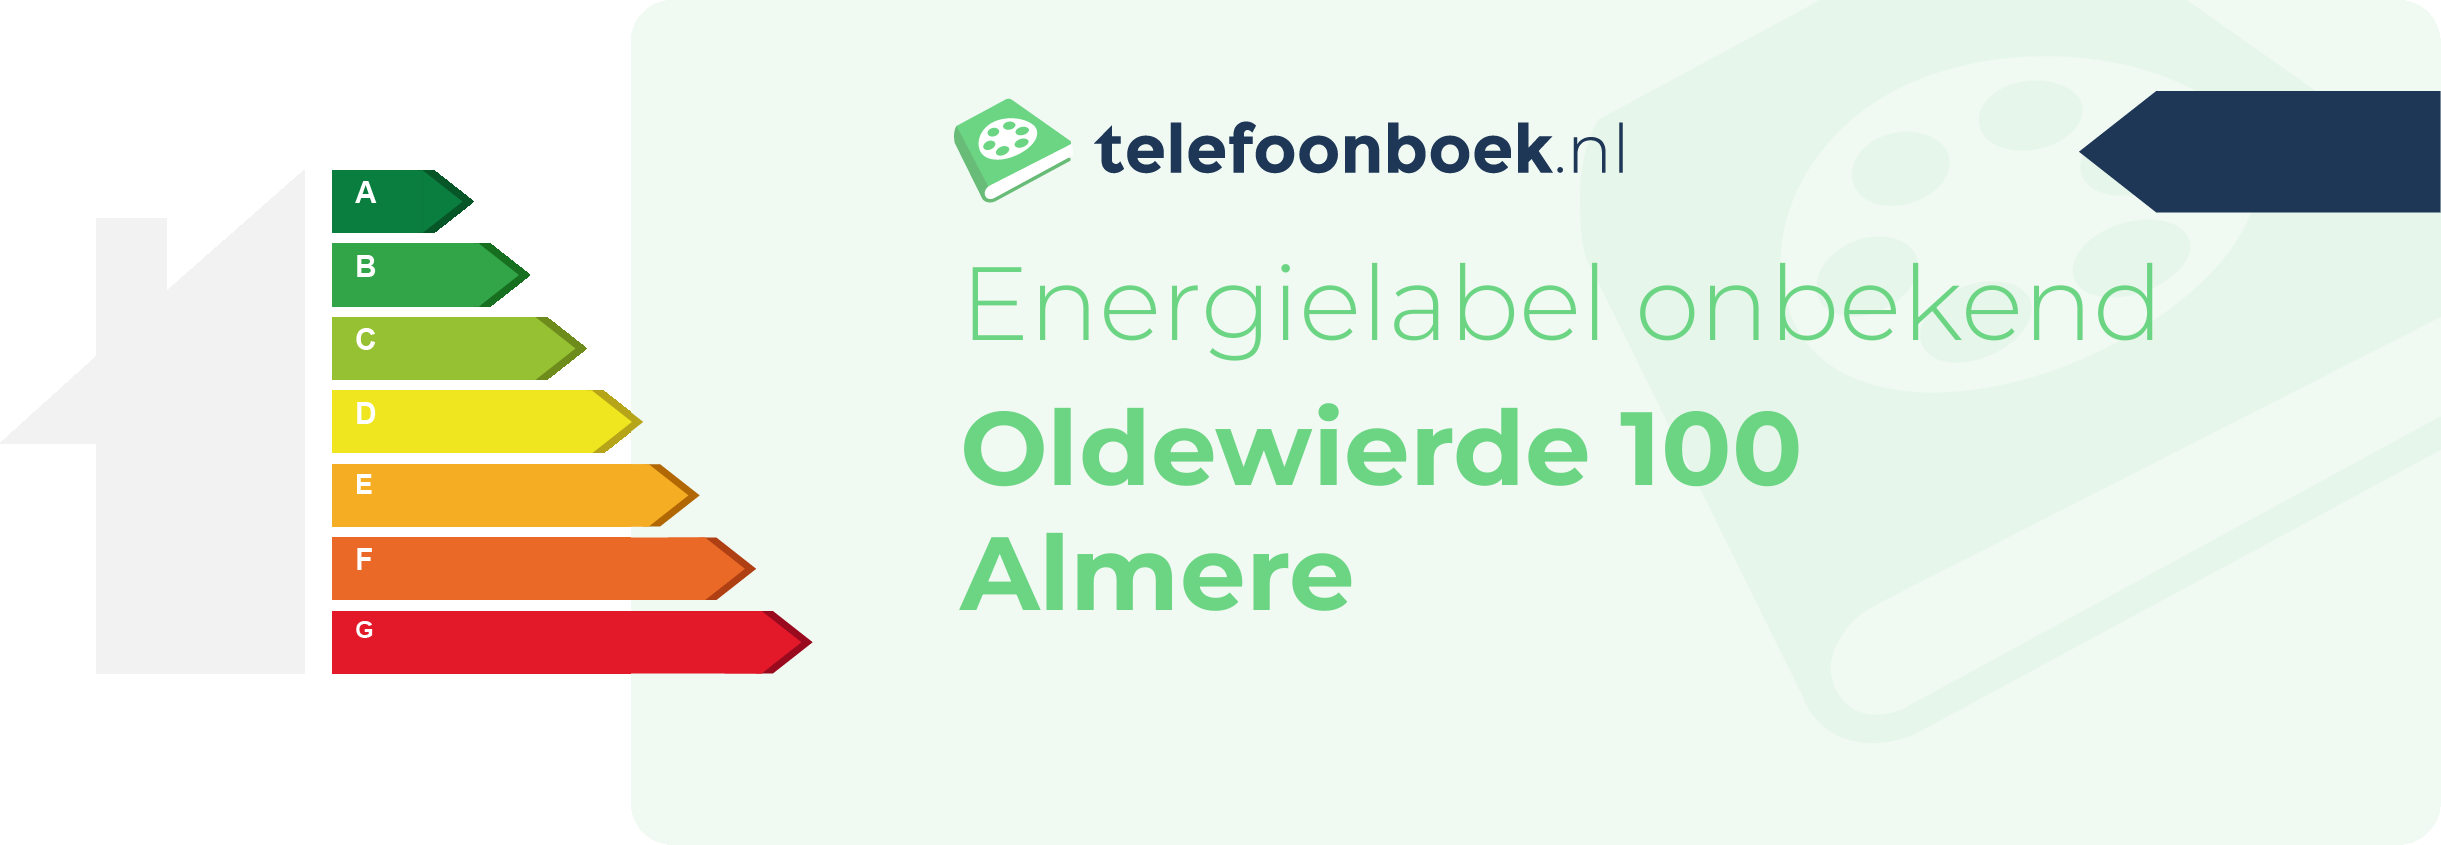 Energielabel Oldewierde 100 Almere